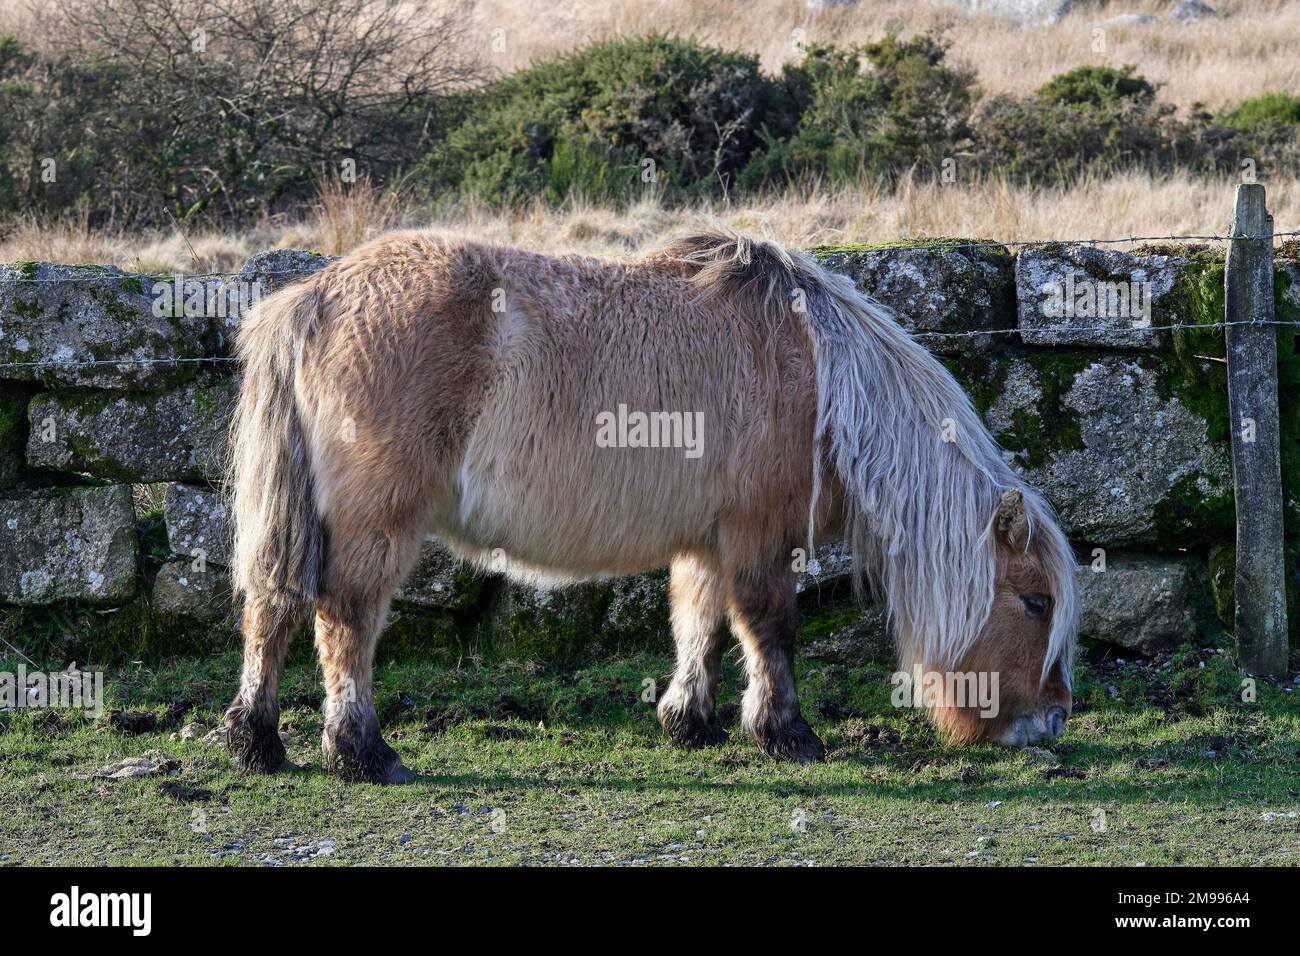 Dartmoor Hill Ponies at Lower Cherry Brook Bridge, Dartmoor National Park, Devon Stock Photo